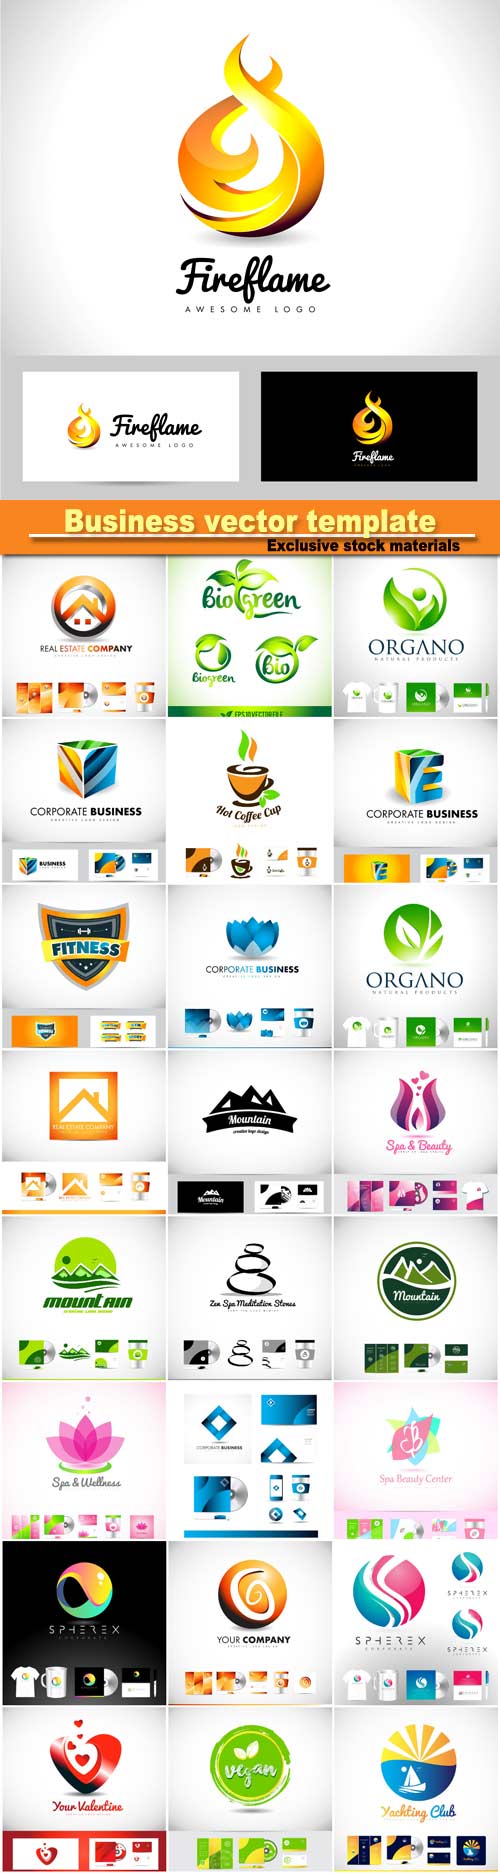 Vector logo icon, design template corporate identity